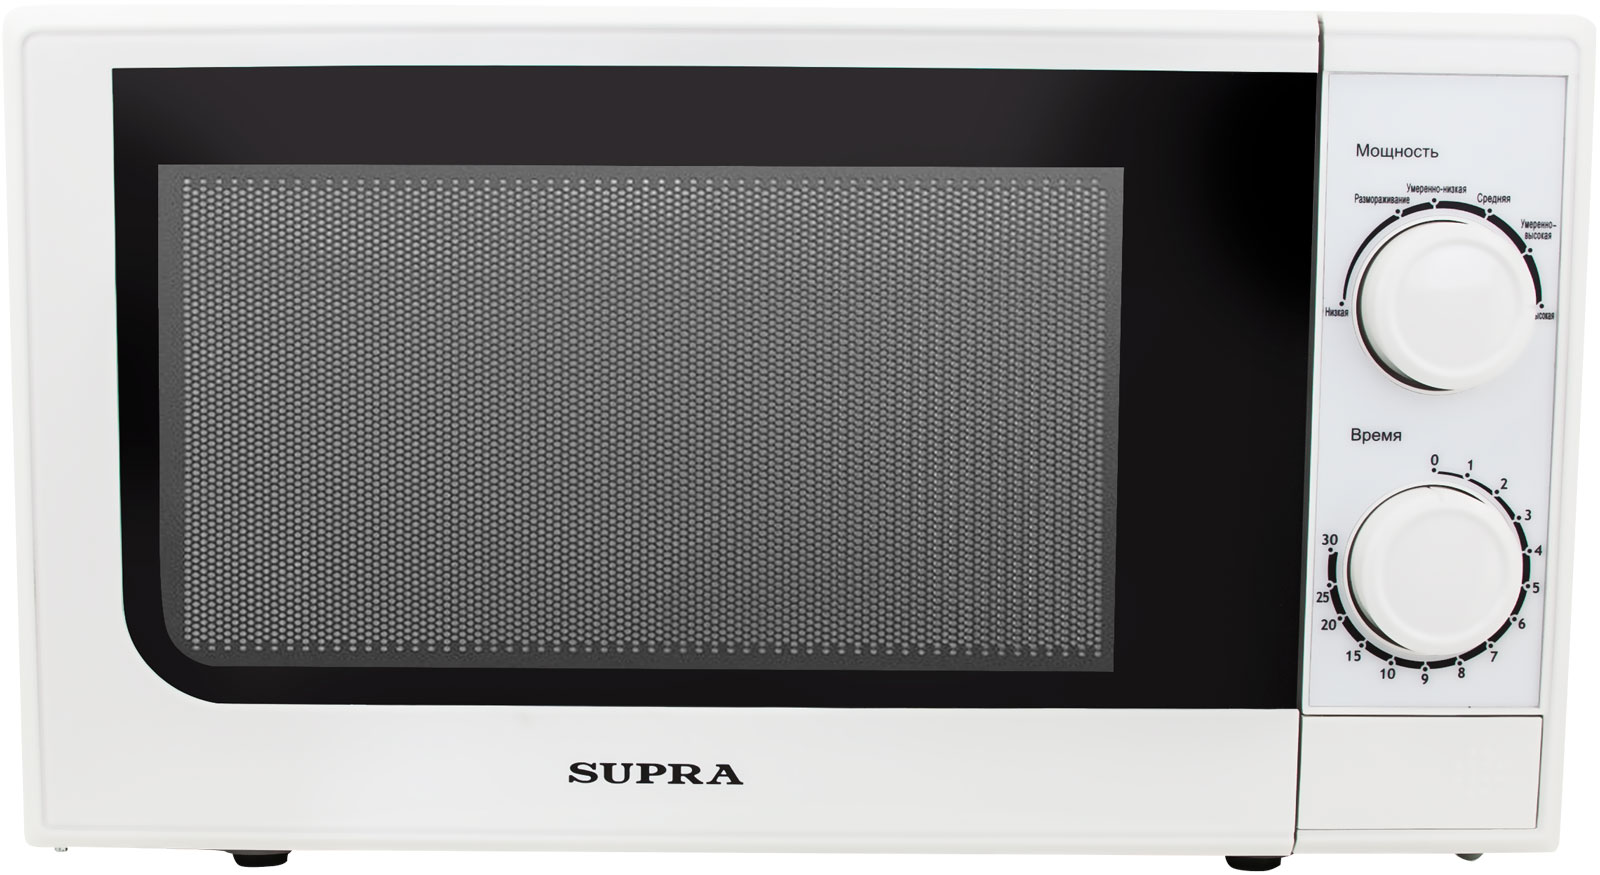 Картинка Микроволновая печь SUPRA 20MW25 по разумной цене купить в интернет магазине mall.su